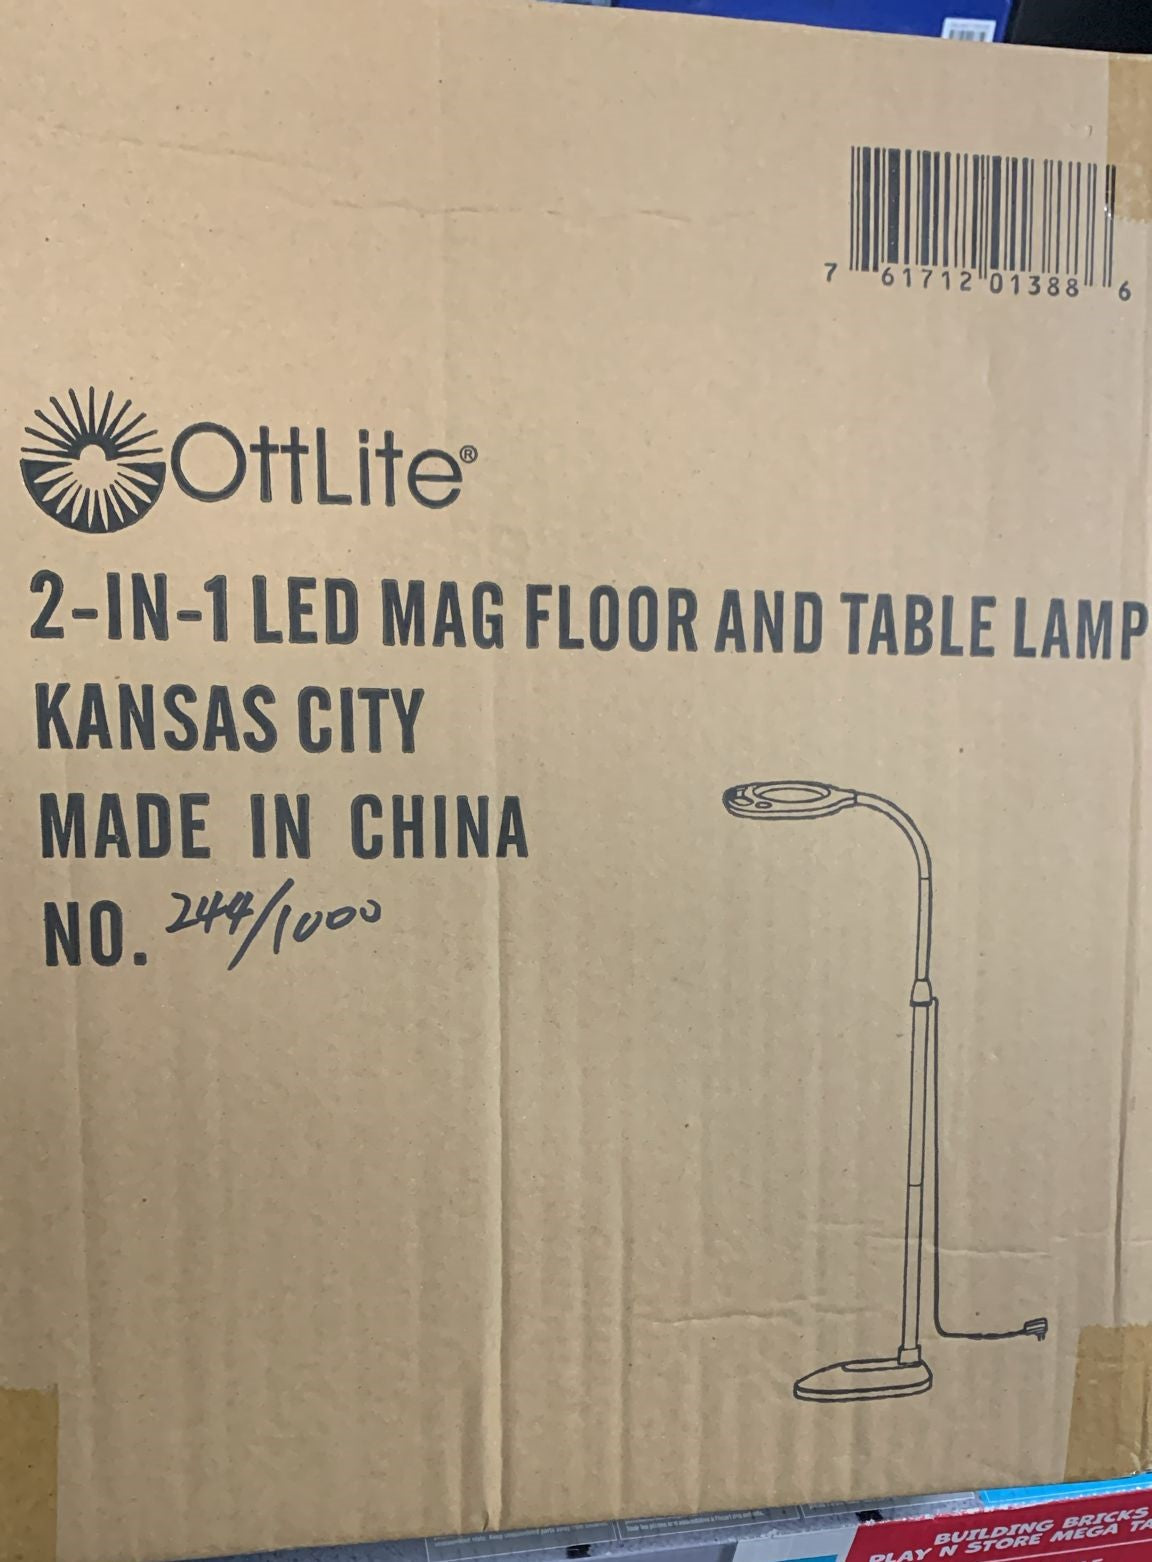 OttLite 2-in-1 LED Magnifier Floor and Table Light